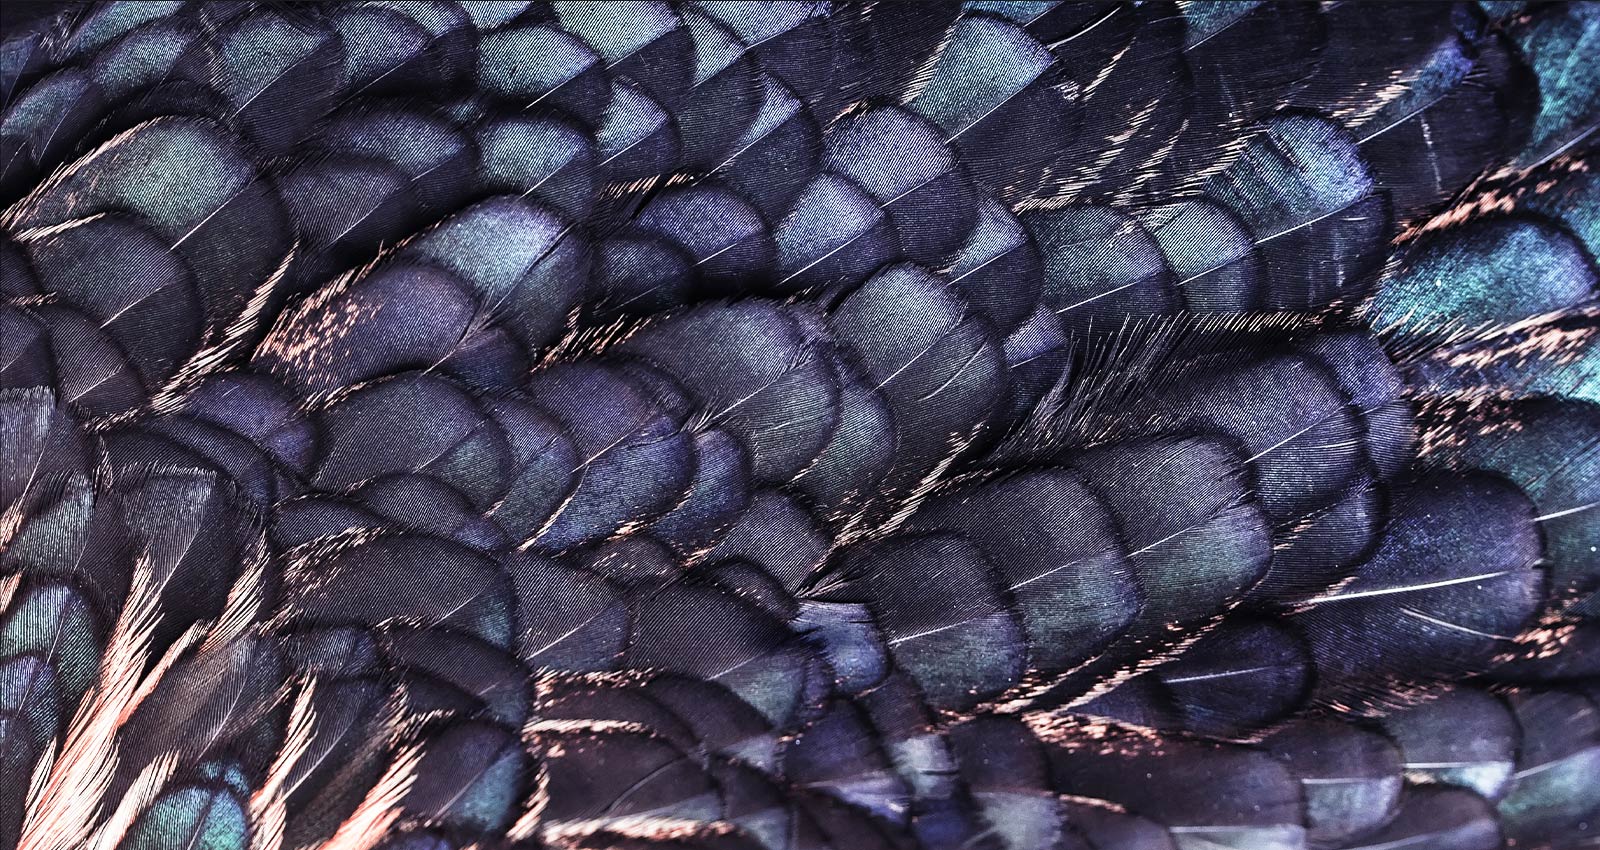 Hay una imagen de texturas de plumas iridiscentes brillantes de un pájaro de hadas de color lila. La imagen se divide en dos: la parte superior es más vívida y dice aumento de escala de 8K con IA con imagen de chip de procesador y la parte inferior es más pálida.